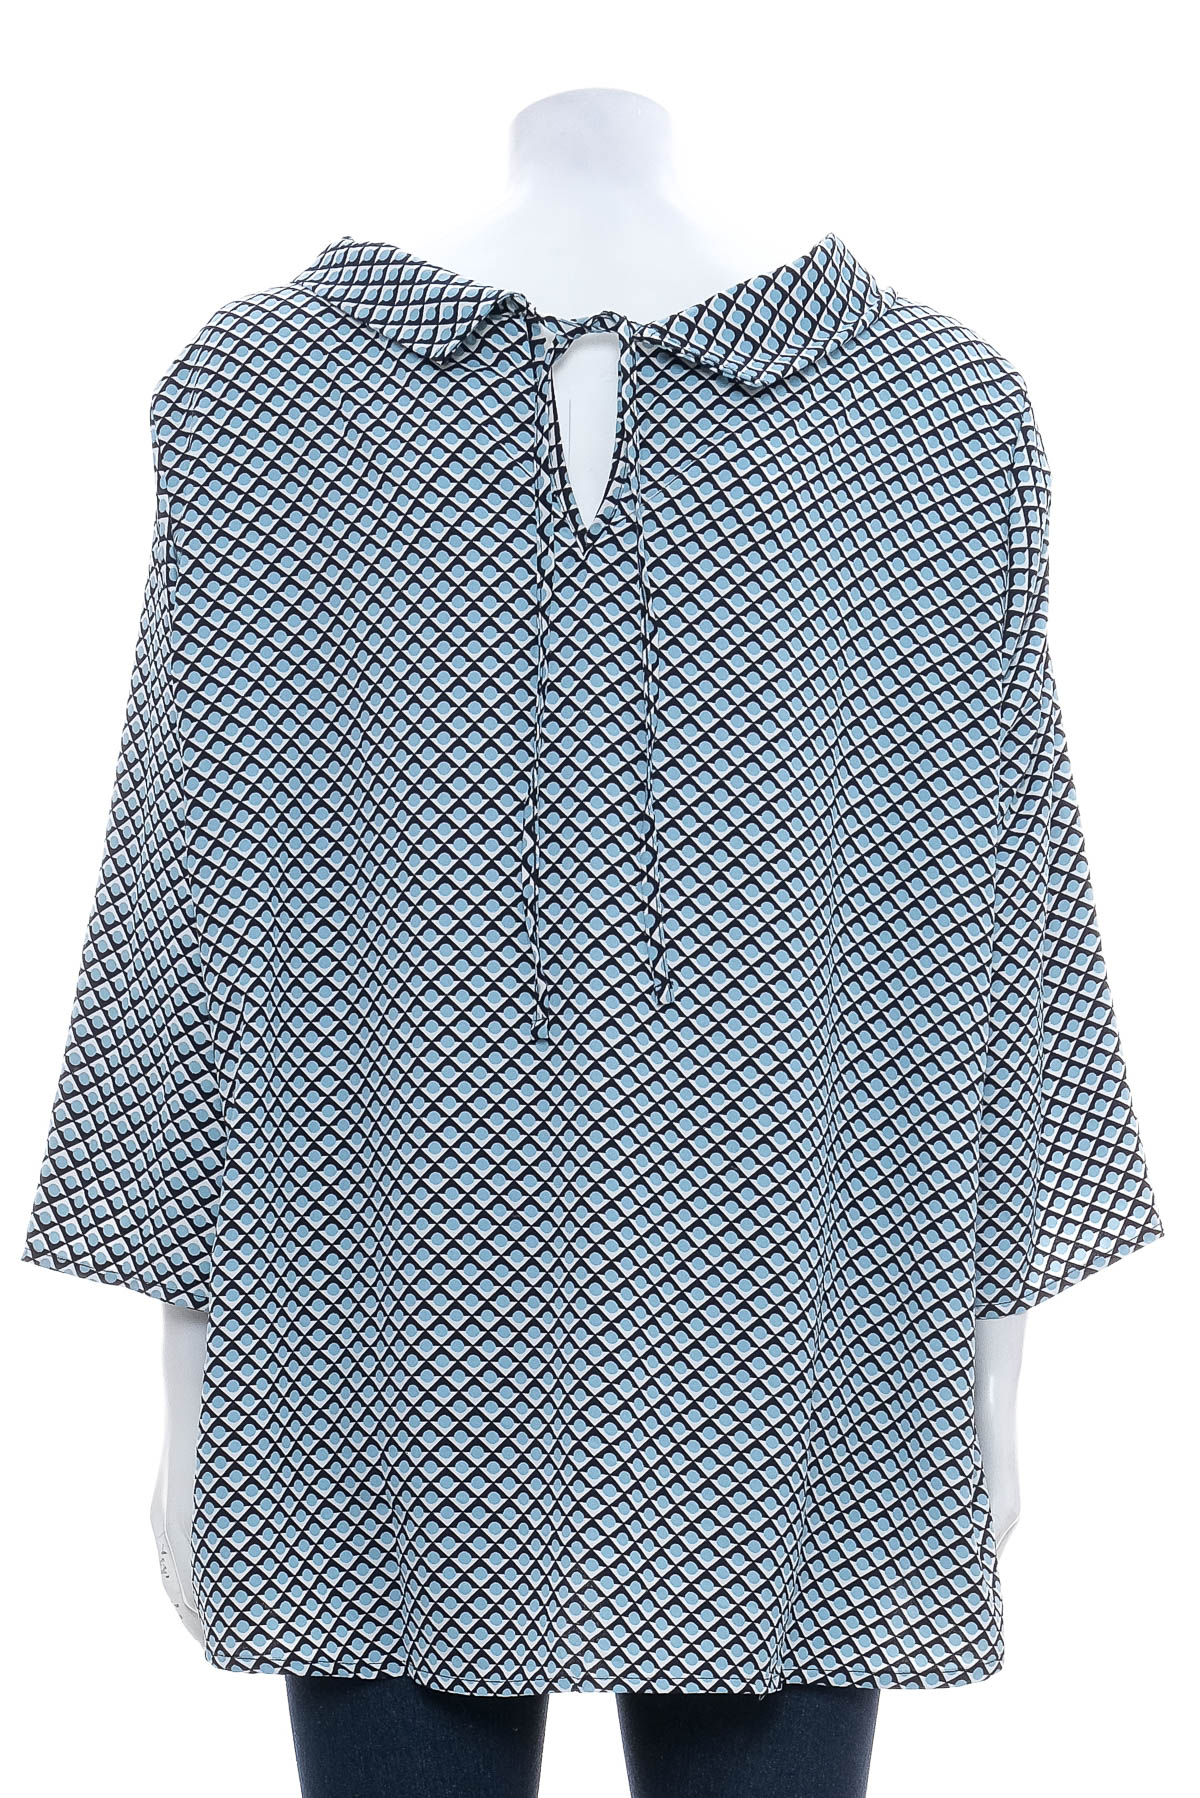 Γυναικείо πουκάμισο - AproductZ - 1